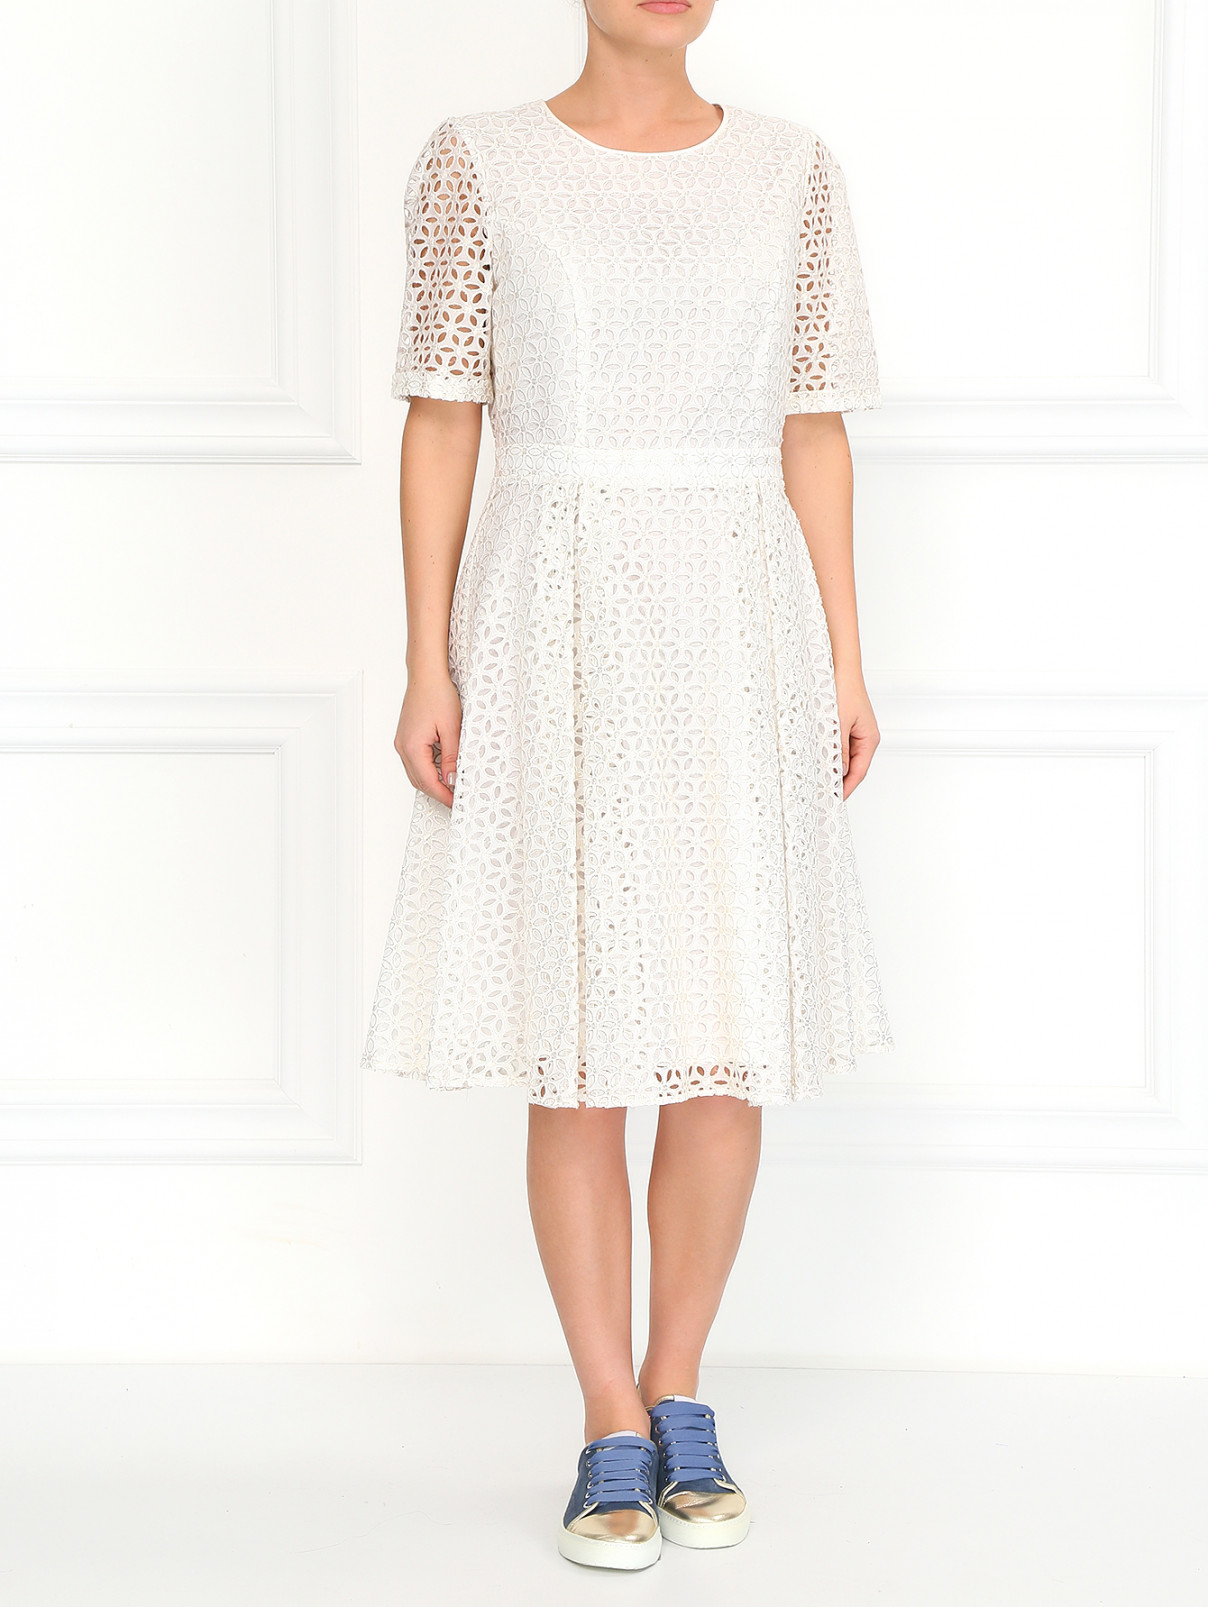 Платье из перфорированного хлопка BOSCO  –  Модель Общий вид  – Цвет:  Белый